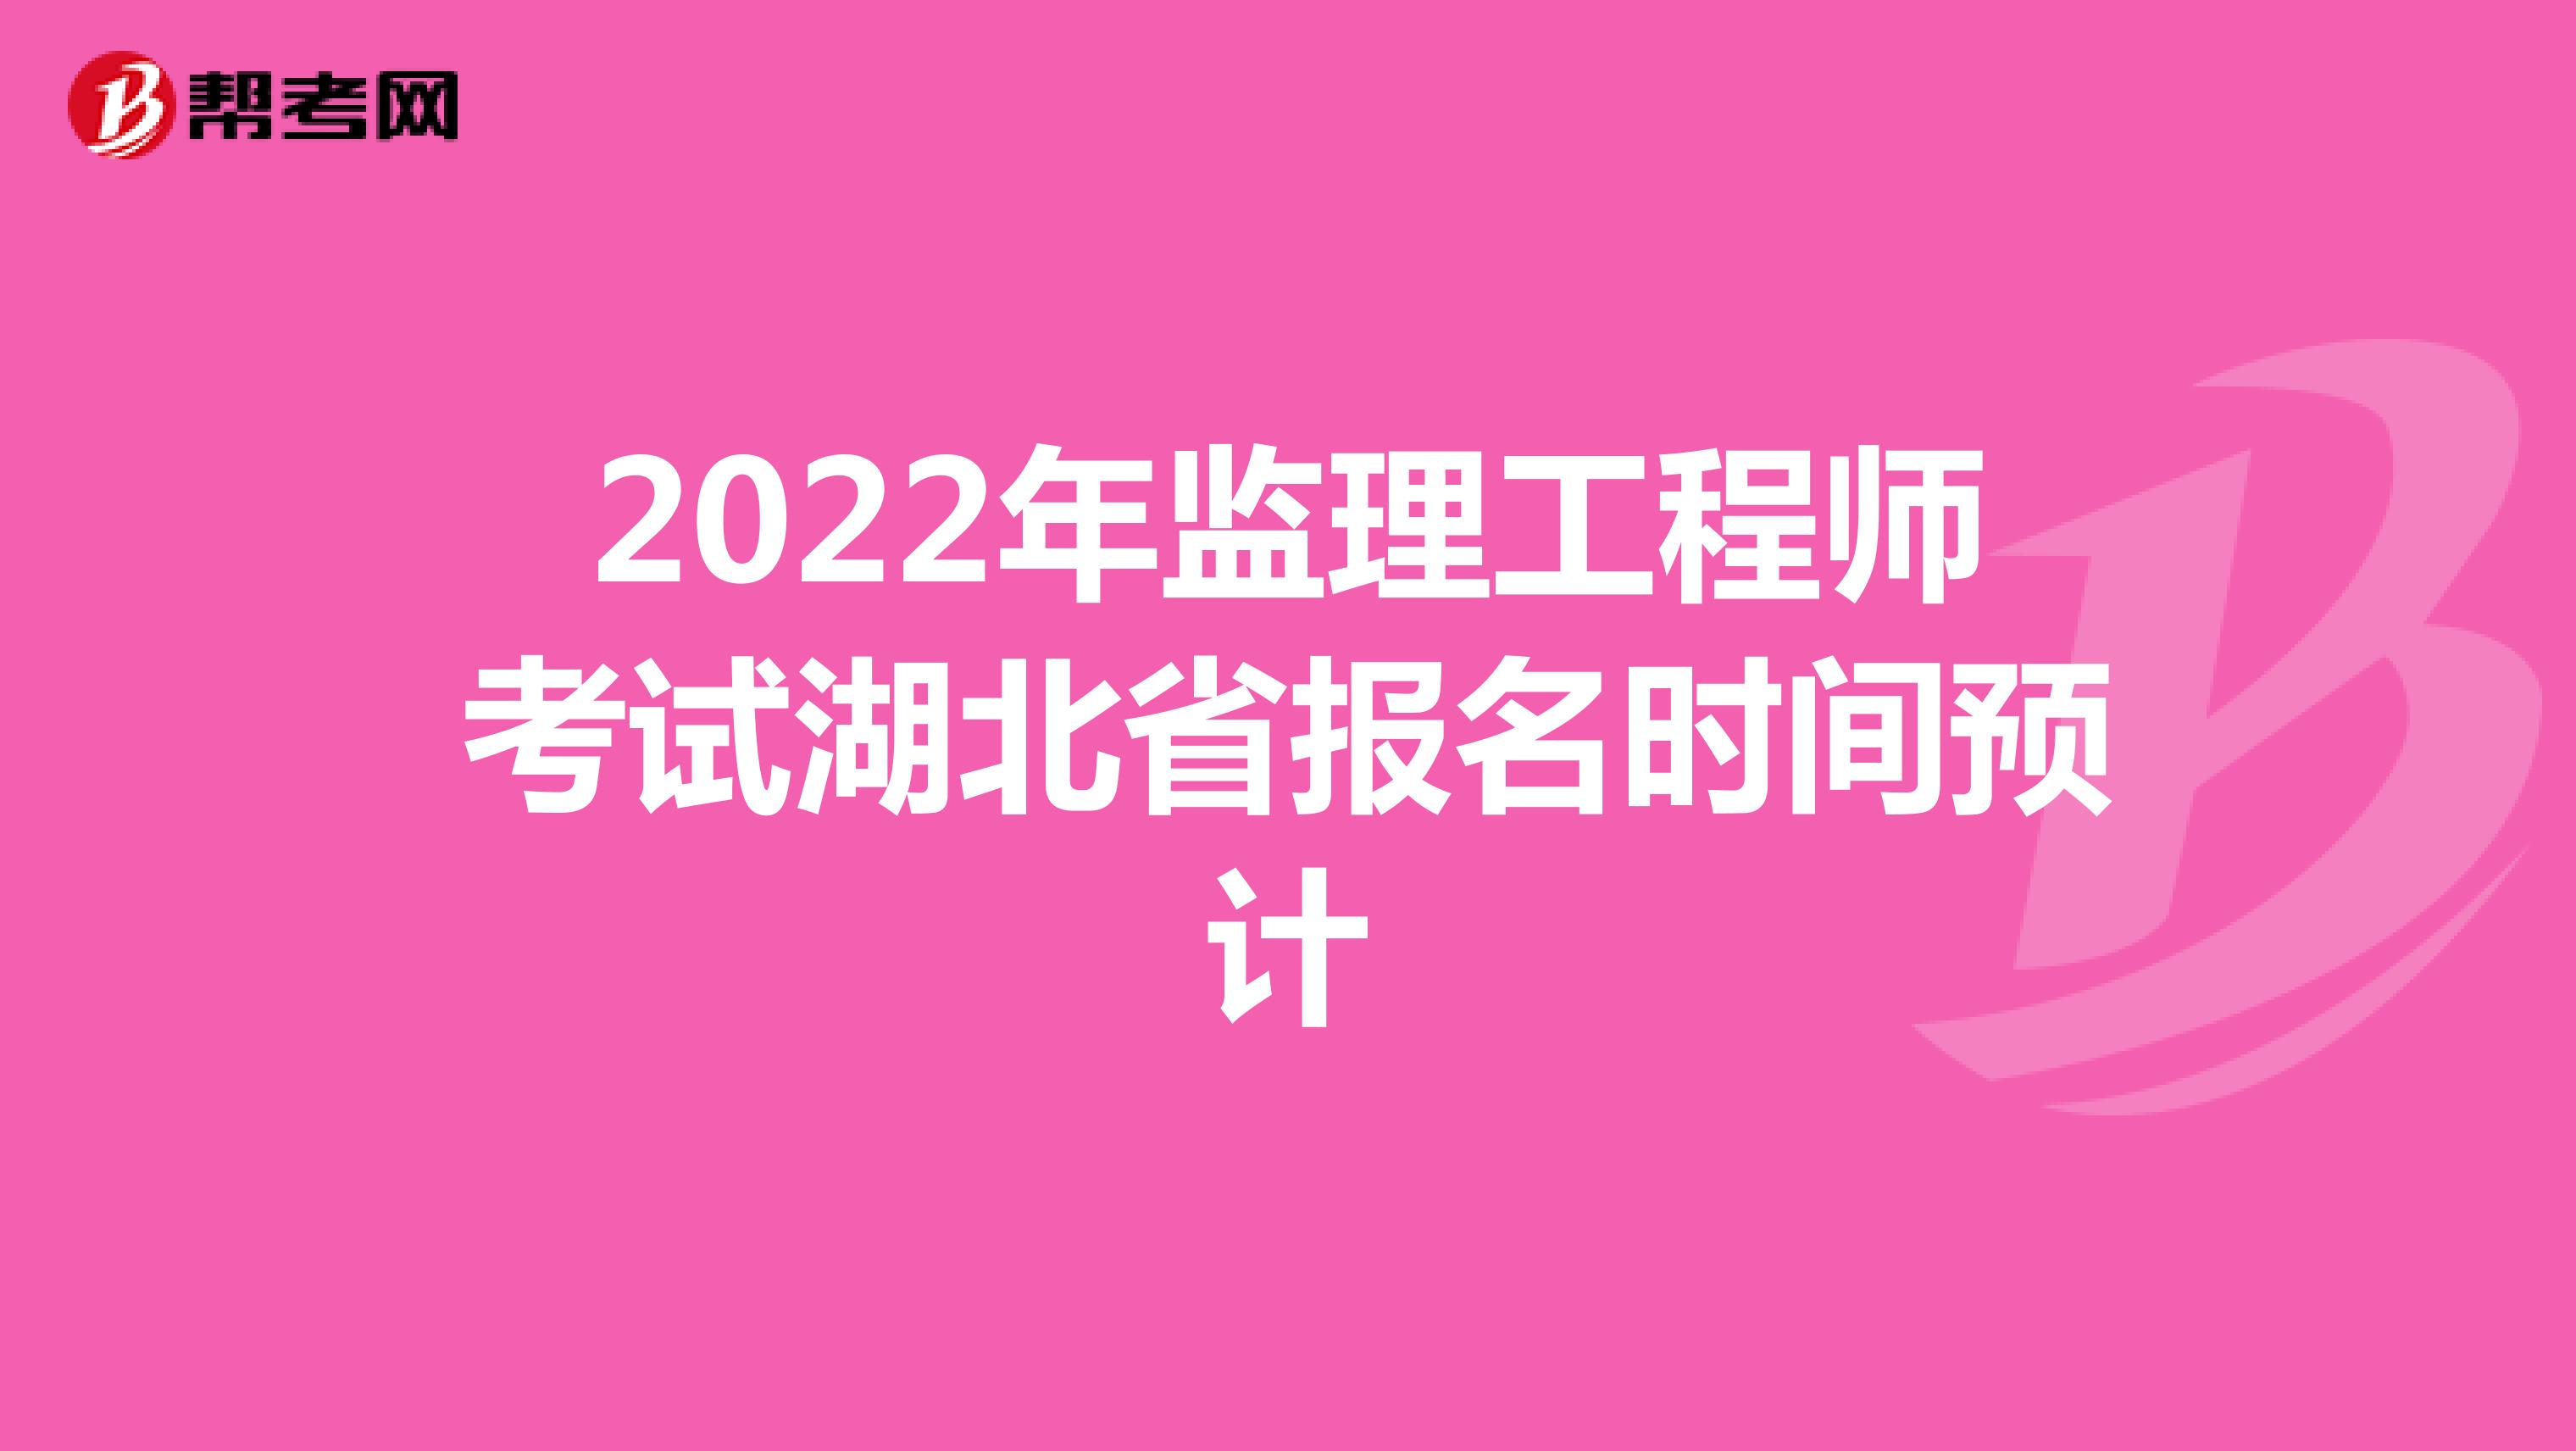 2022年监理工程师考试湖北省报名时间预计